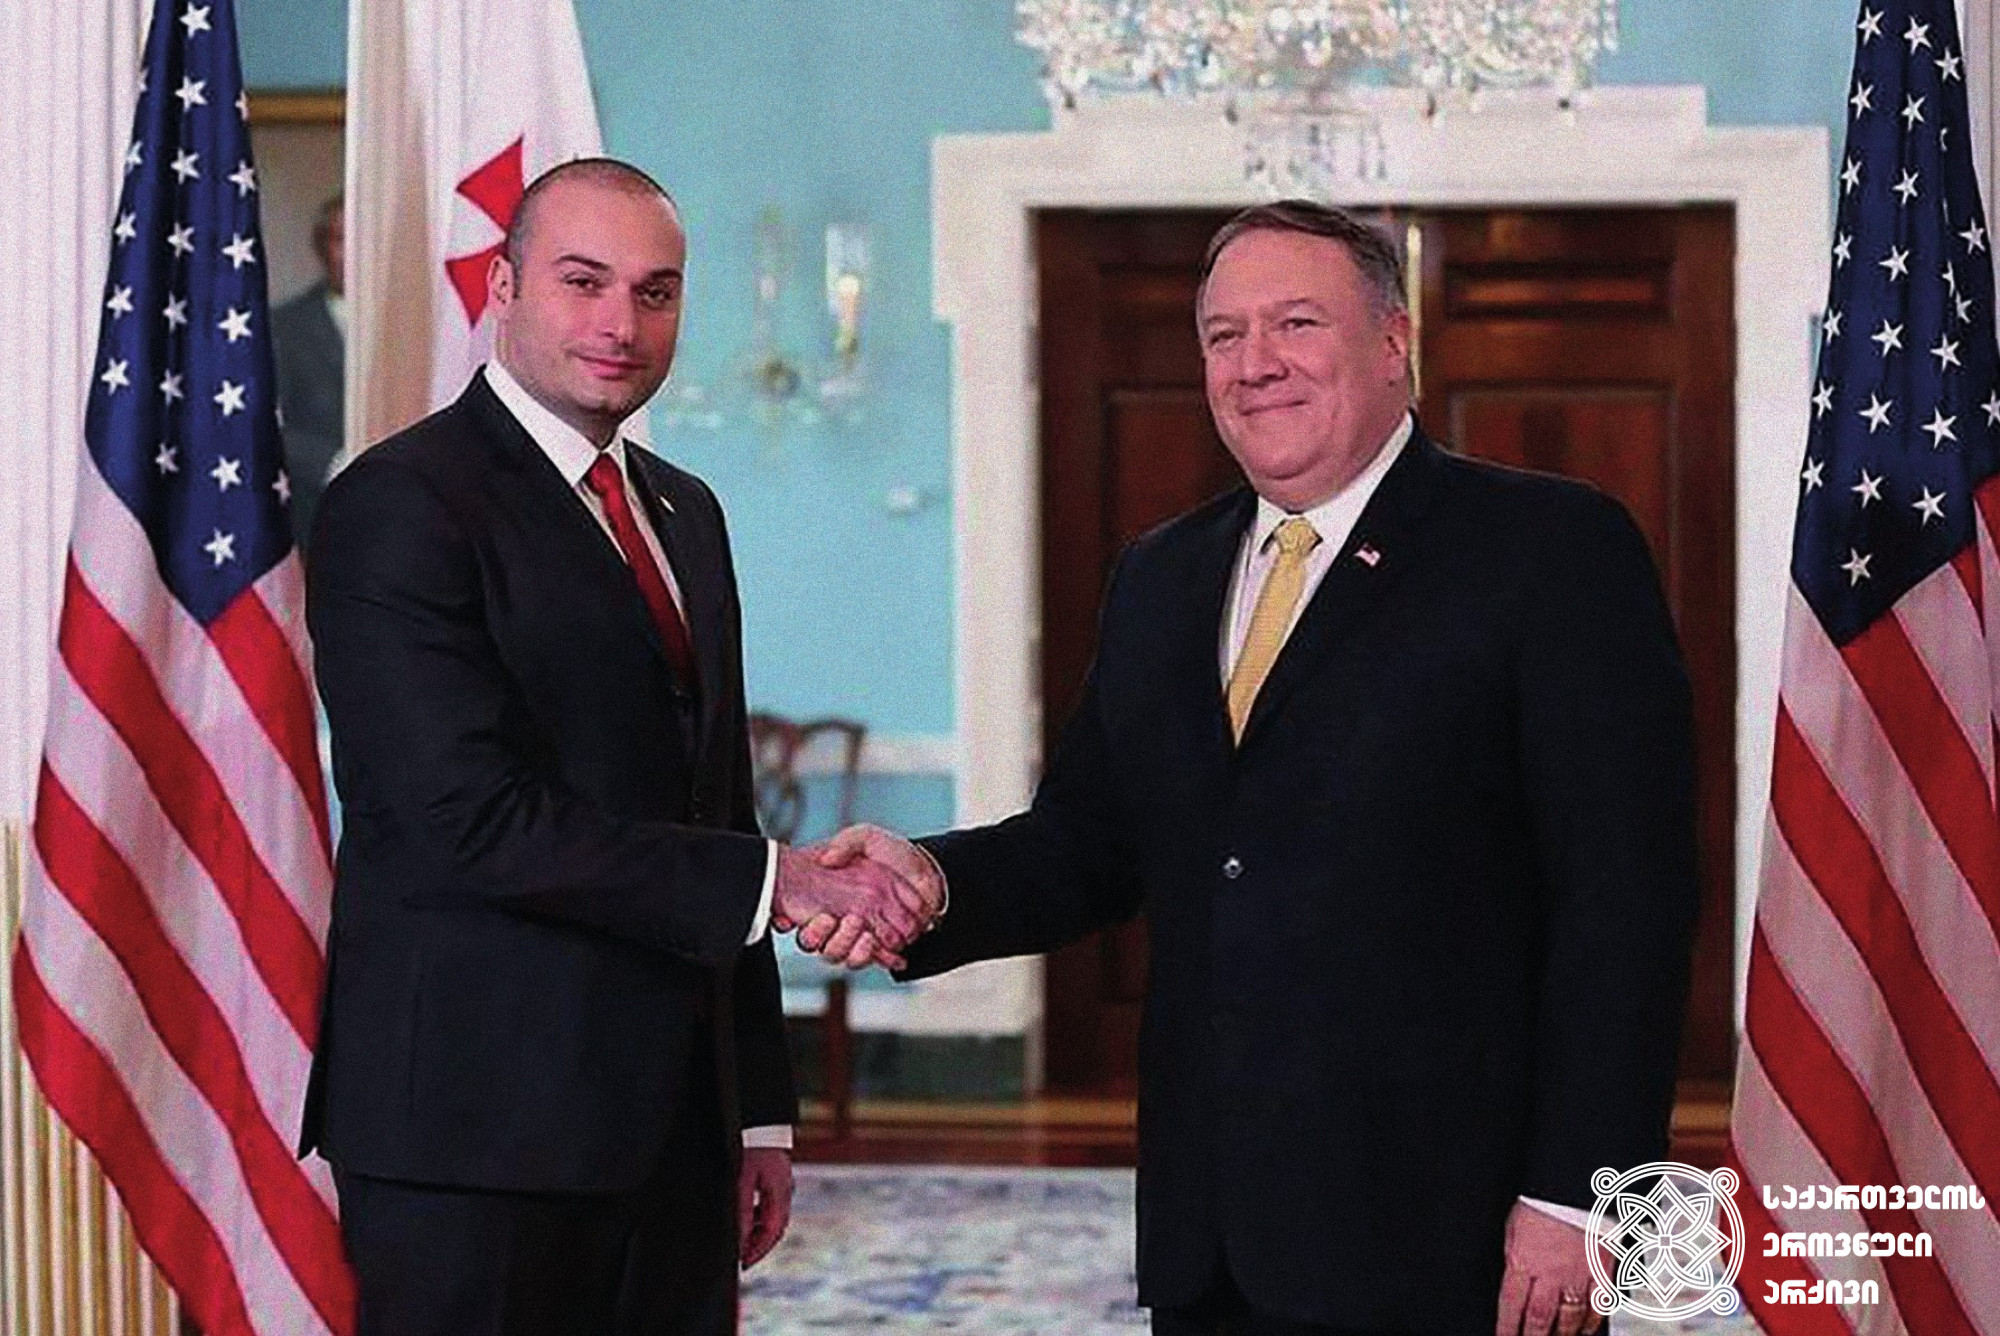 საქართველოს პრემიერ-მინისტრი მამუკა ბახტაძე და აშშ-ის სახელმწიფო მდივანი მაიკ პომპეო. <br>
ვაშინგტონი, 2018 წელი.<br> 
ფოტო: საქართველოს მთავრობა<br> 
Prime Minister of Georgia, Mamuka Bakhtadze and U.S. Secretary of State, Mike Pompeo. <br>
Washington, 2018.<br>
Photo: Government of Georgia